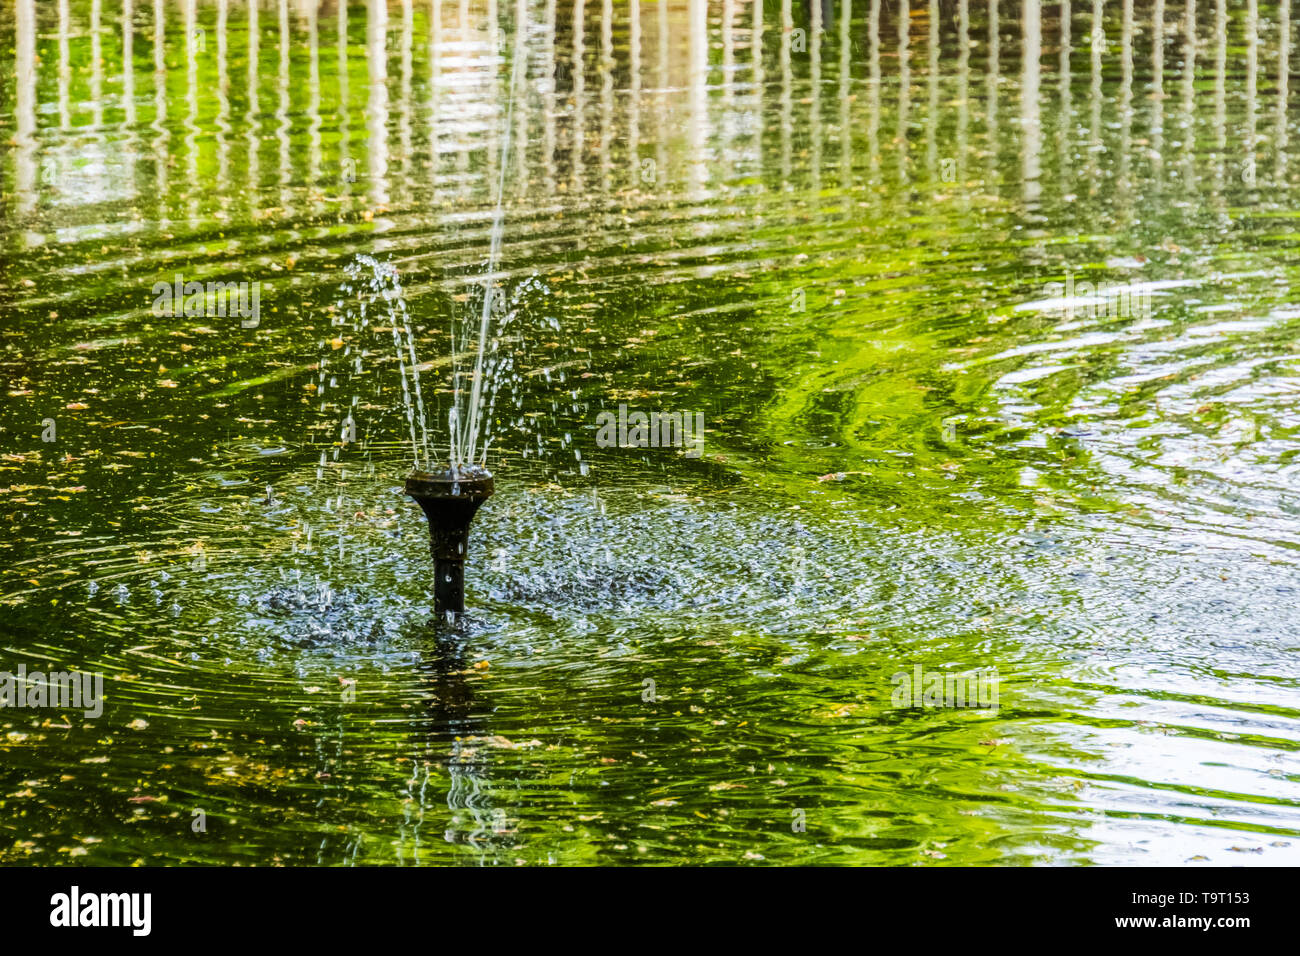 Fontaine d'eau, pulvériser de l'eau sprinkleur étang décorations pour le jardin Banque D'Images